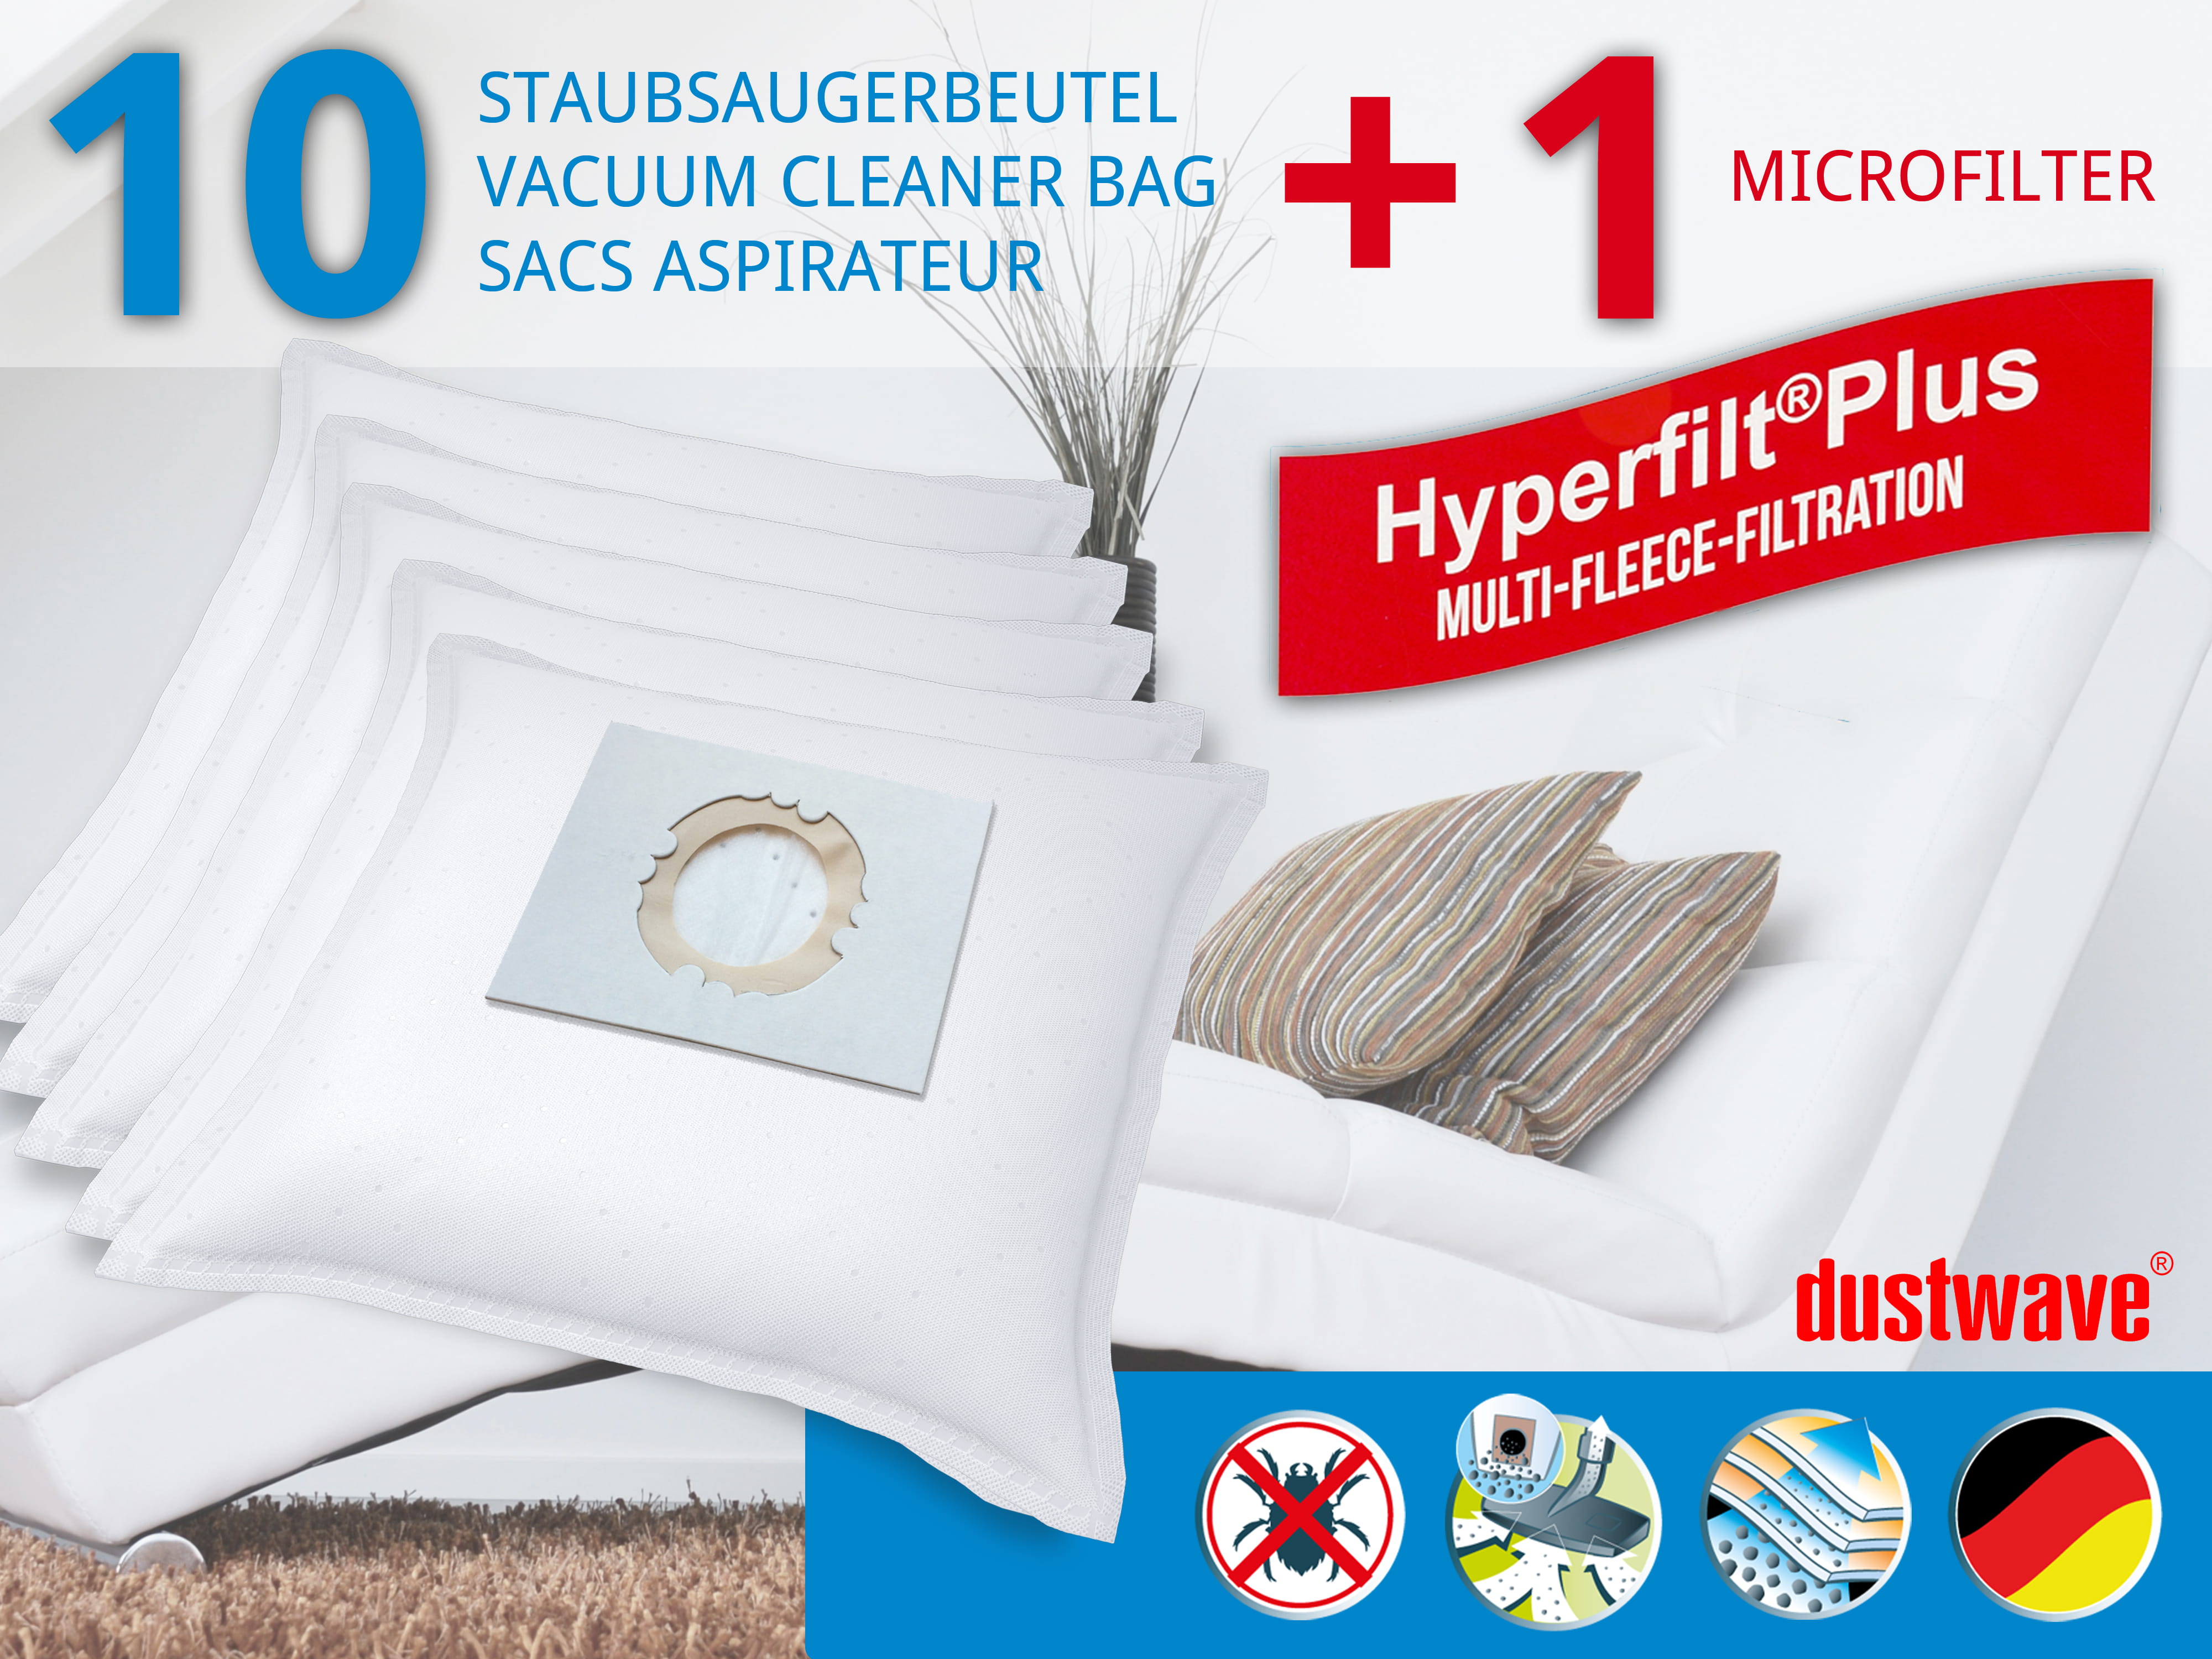 Dustwave® 10 Staubsaugerbeutel für Hoover SCST325EC011 - hocheffizient, mehrlagiges Mikrovlies mit Hygieneverschluss - Made in Germany